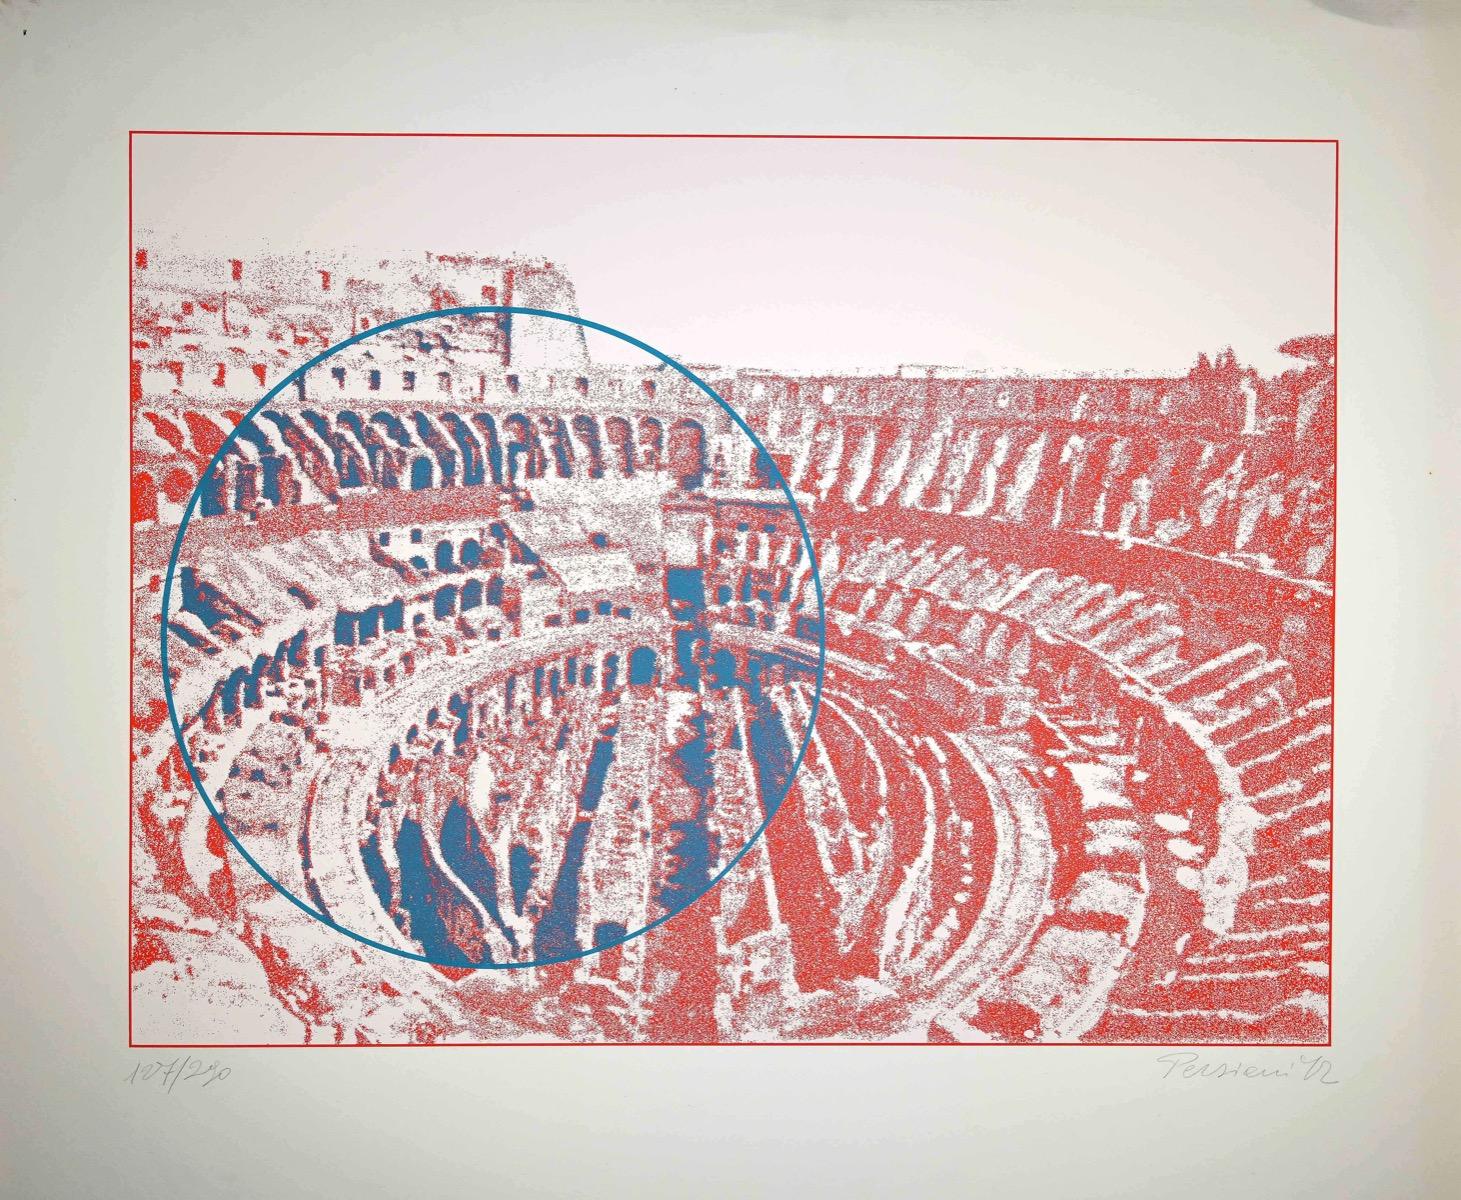 Rome - Colosseum interior - Screen Print by Costantino Persiani - 1972